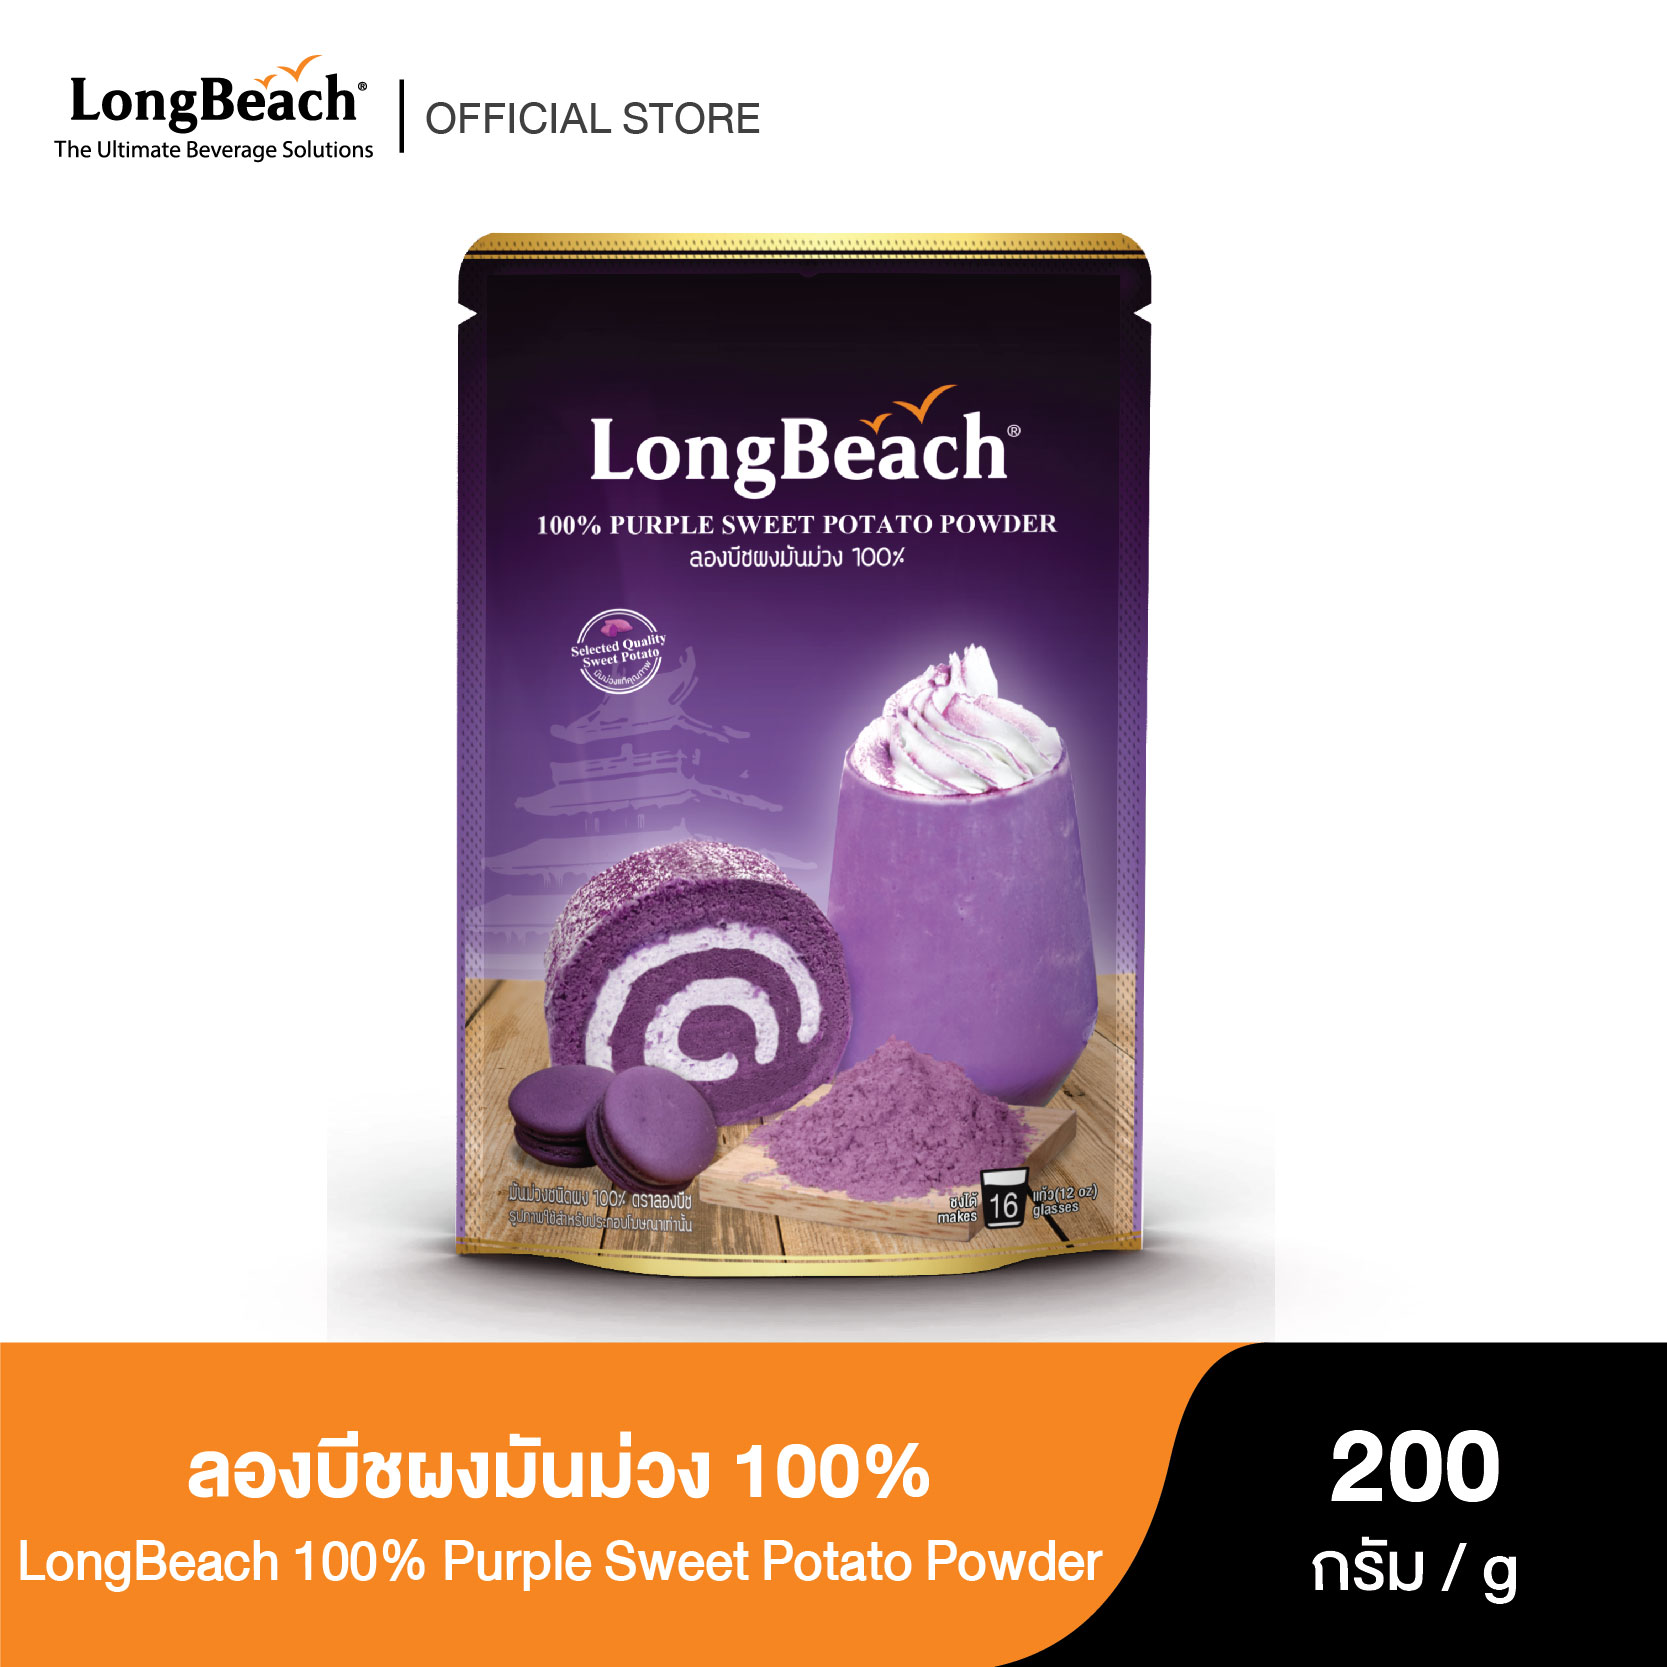 ลองบีชผงมันม่วง 100% (200g.) LongBeach 100% Purple Sweet Potato Powder ชานม/ชานมมันม่วง